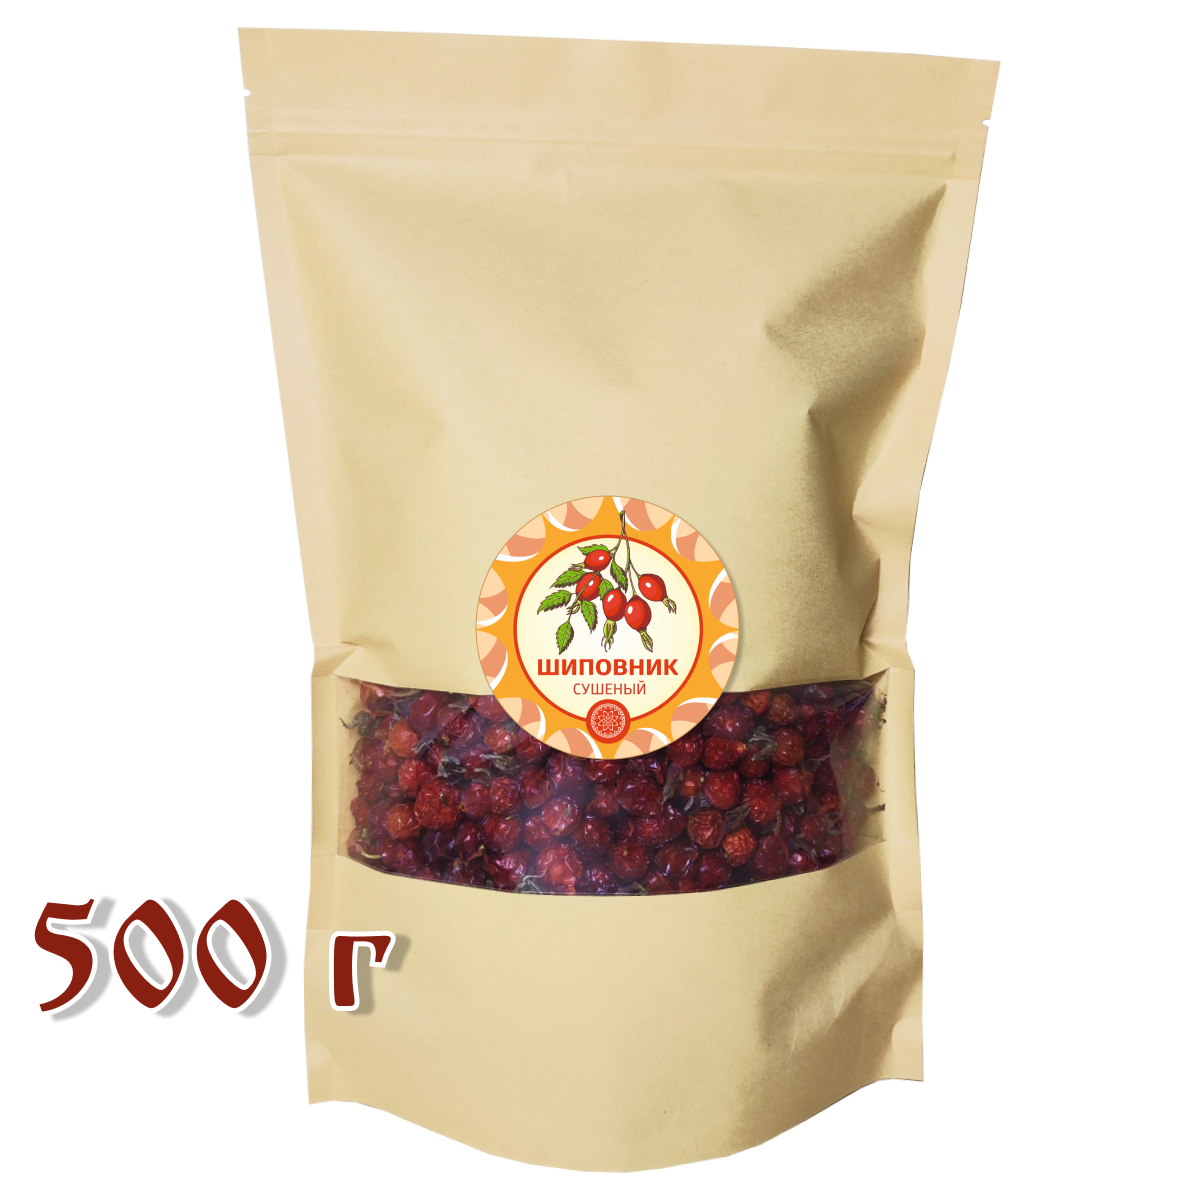 Шиповник Алтайский " Лесной" 500 г. плоды сушеные